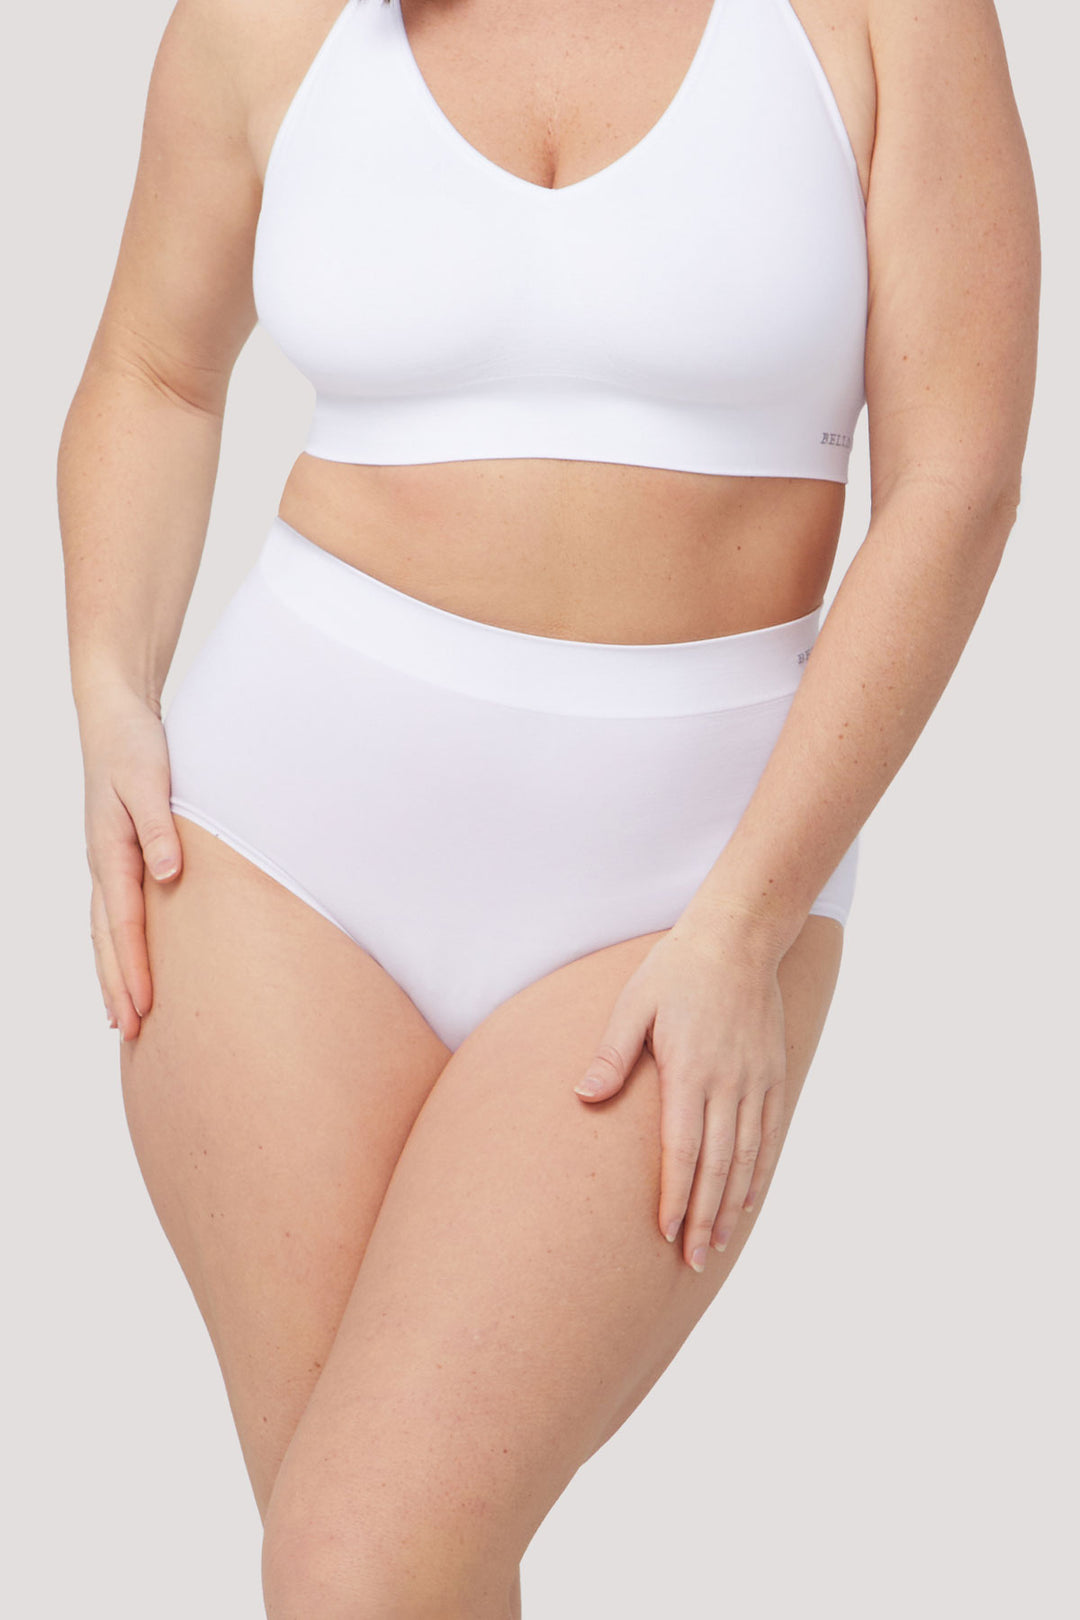 Women's slimming & firming high waist shapewear underwear | Bella Bodies Australia | White | Front